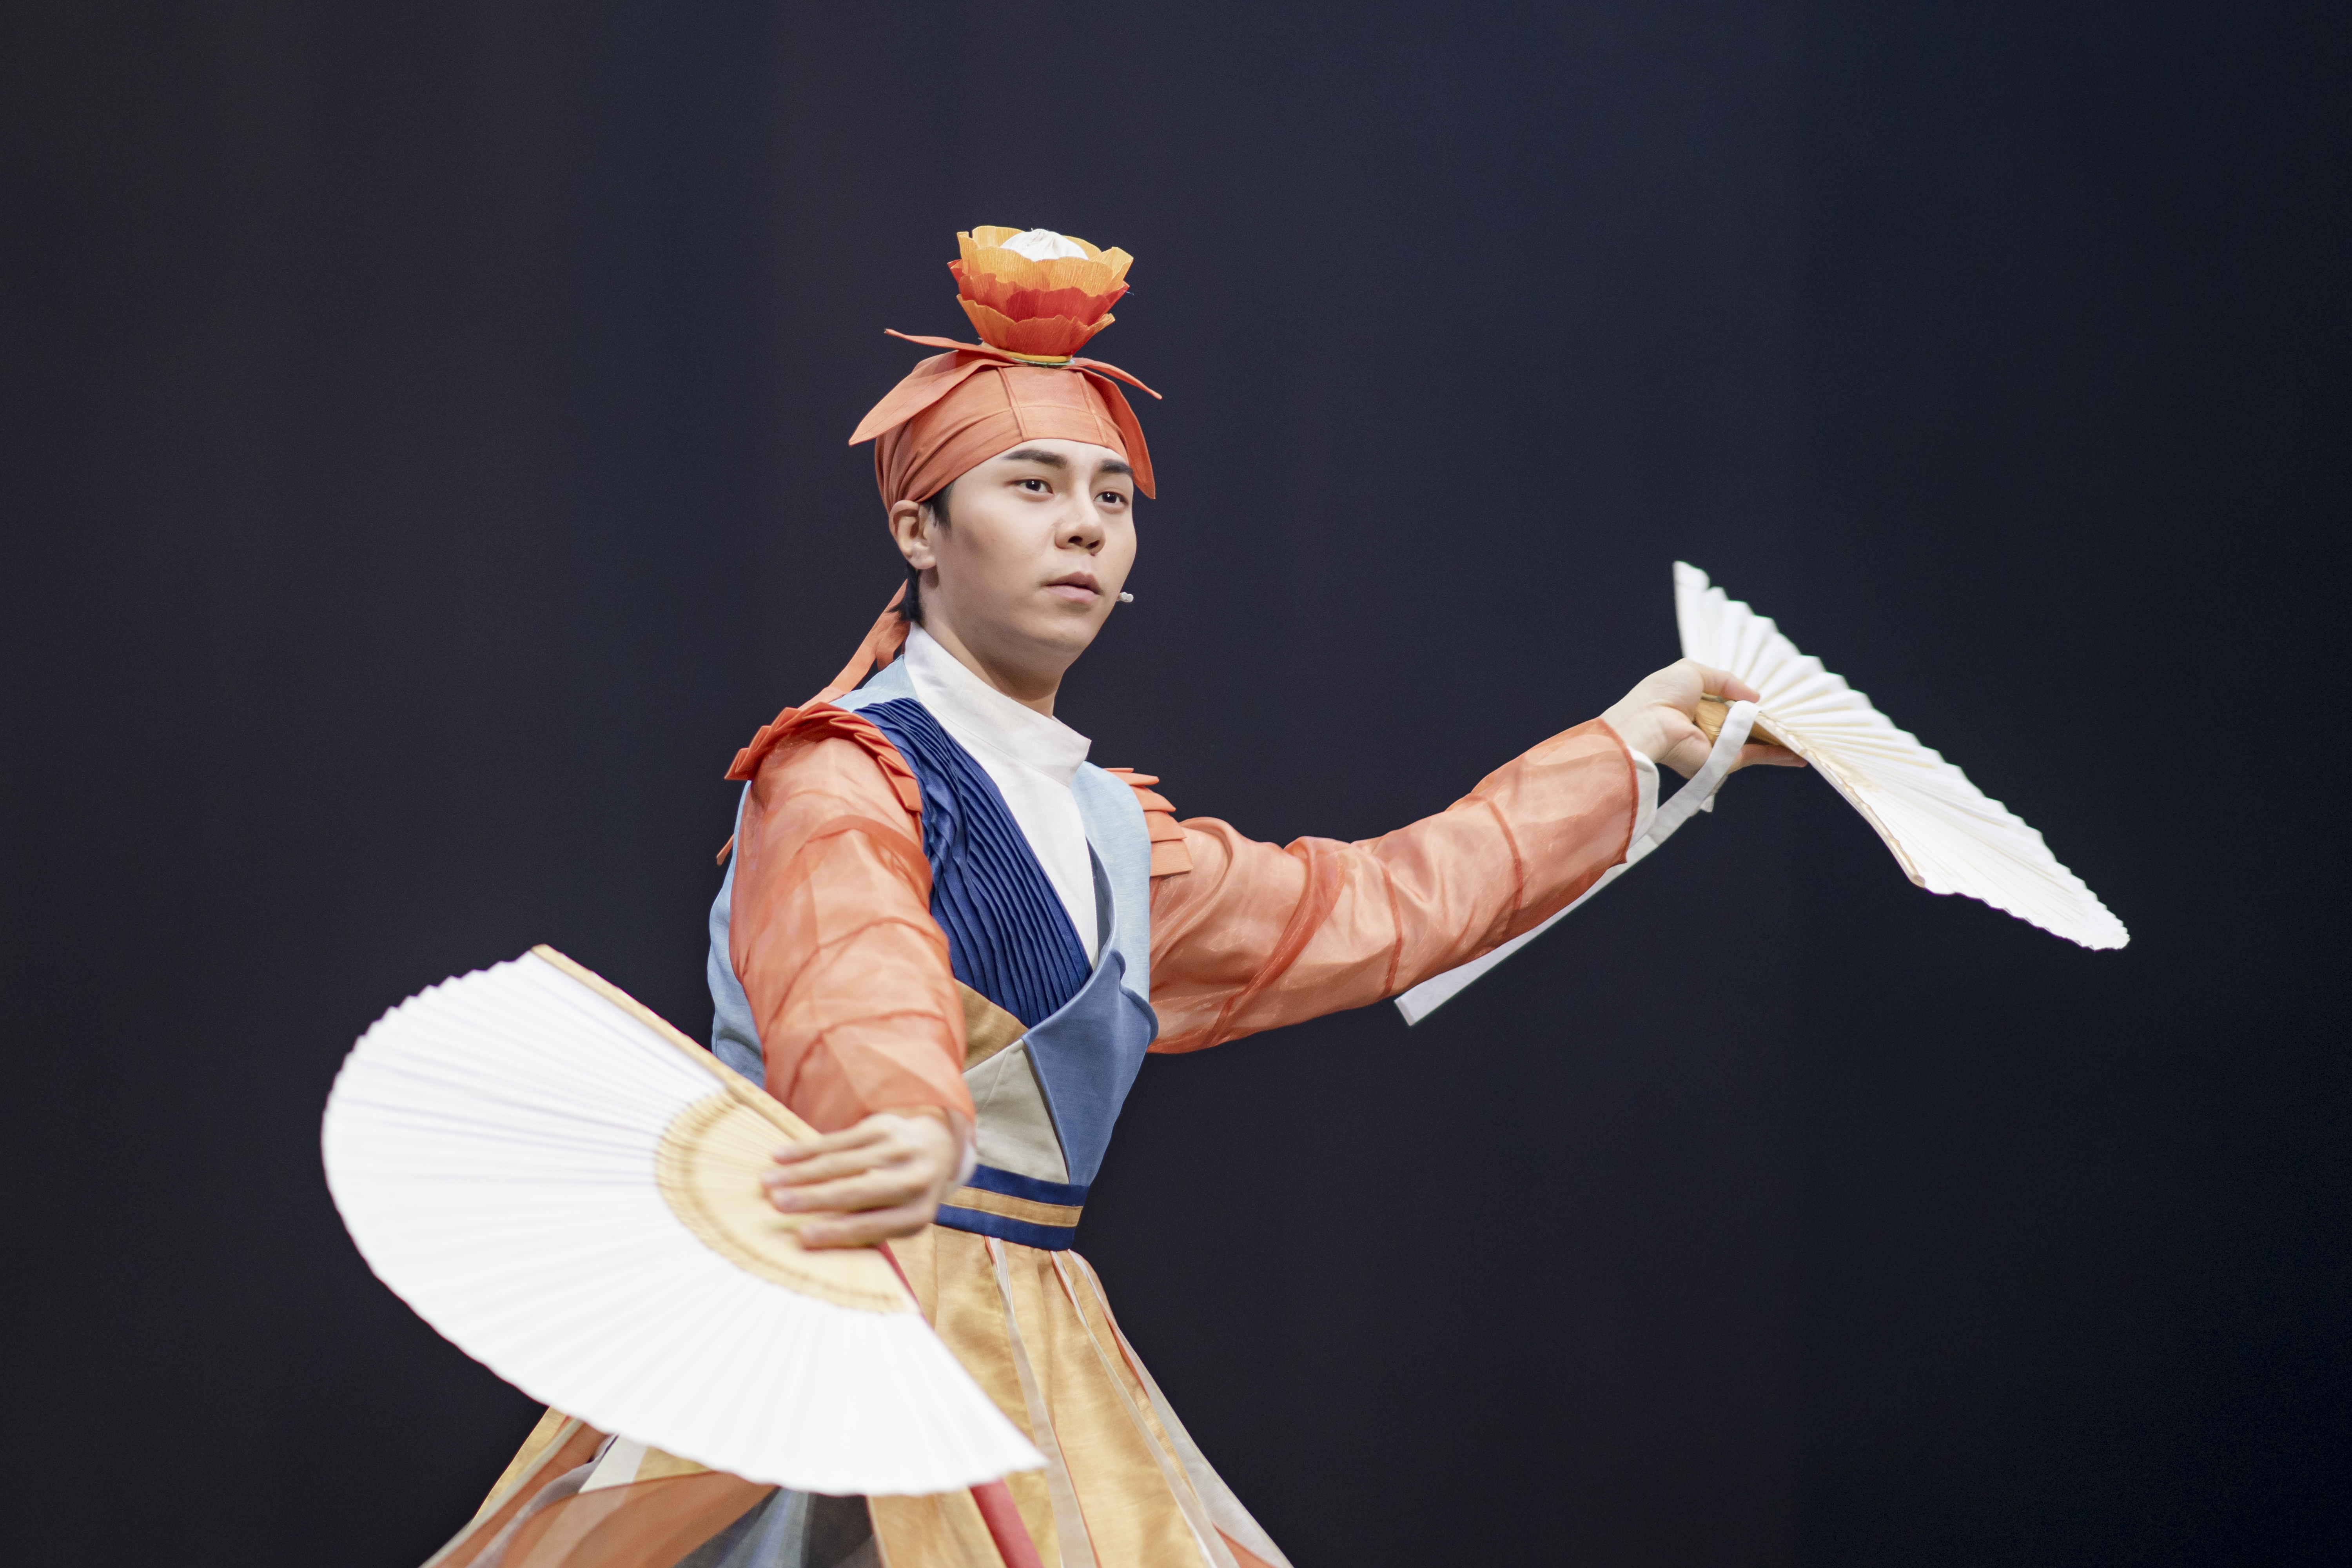 지난 21일까지 서울 중구 국립극장 하늘극장에서 공연된 창극 ‘나무, 물고기, 달’에서 물고기를 연기하며 끼를 뽐낸 김수인.  국립창극단 제공 